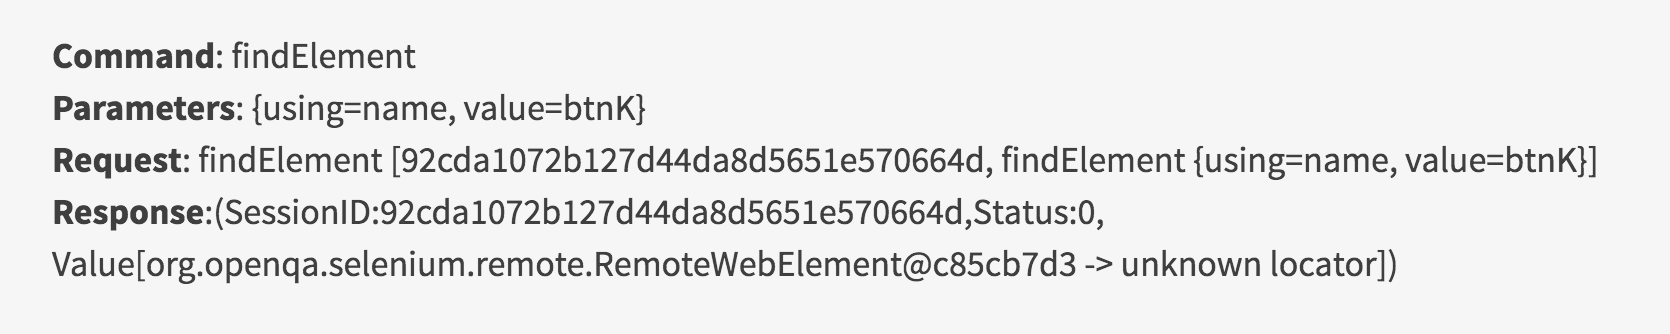 findElement-webdriver-command